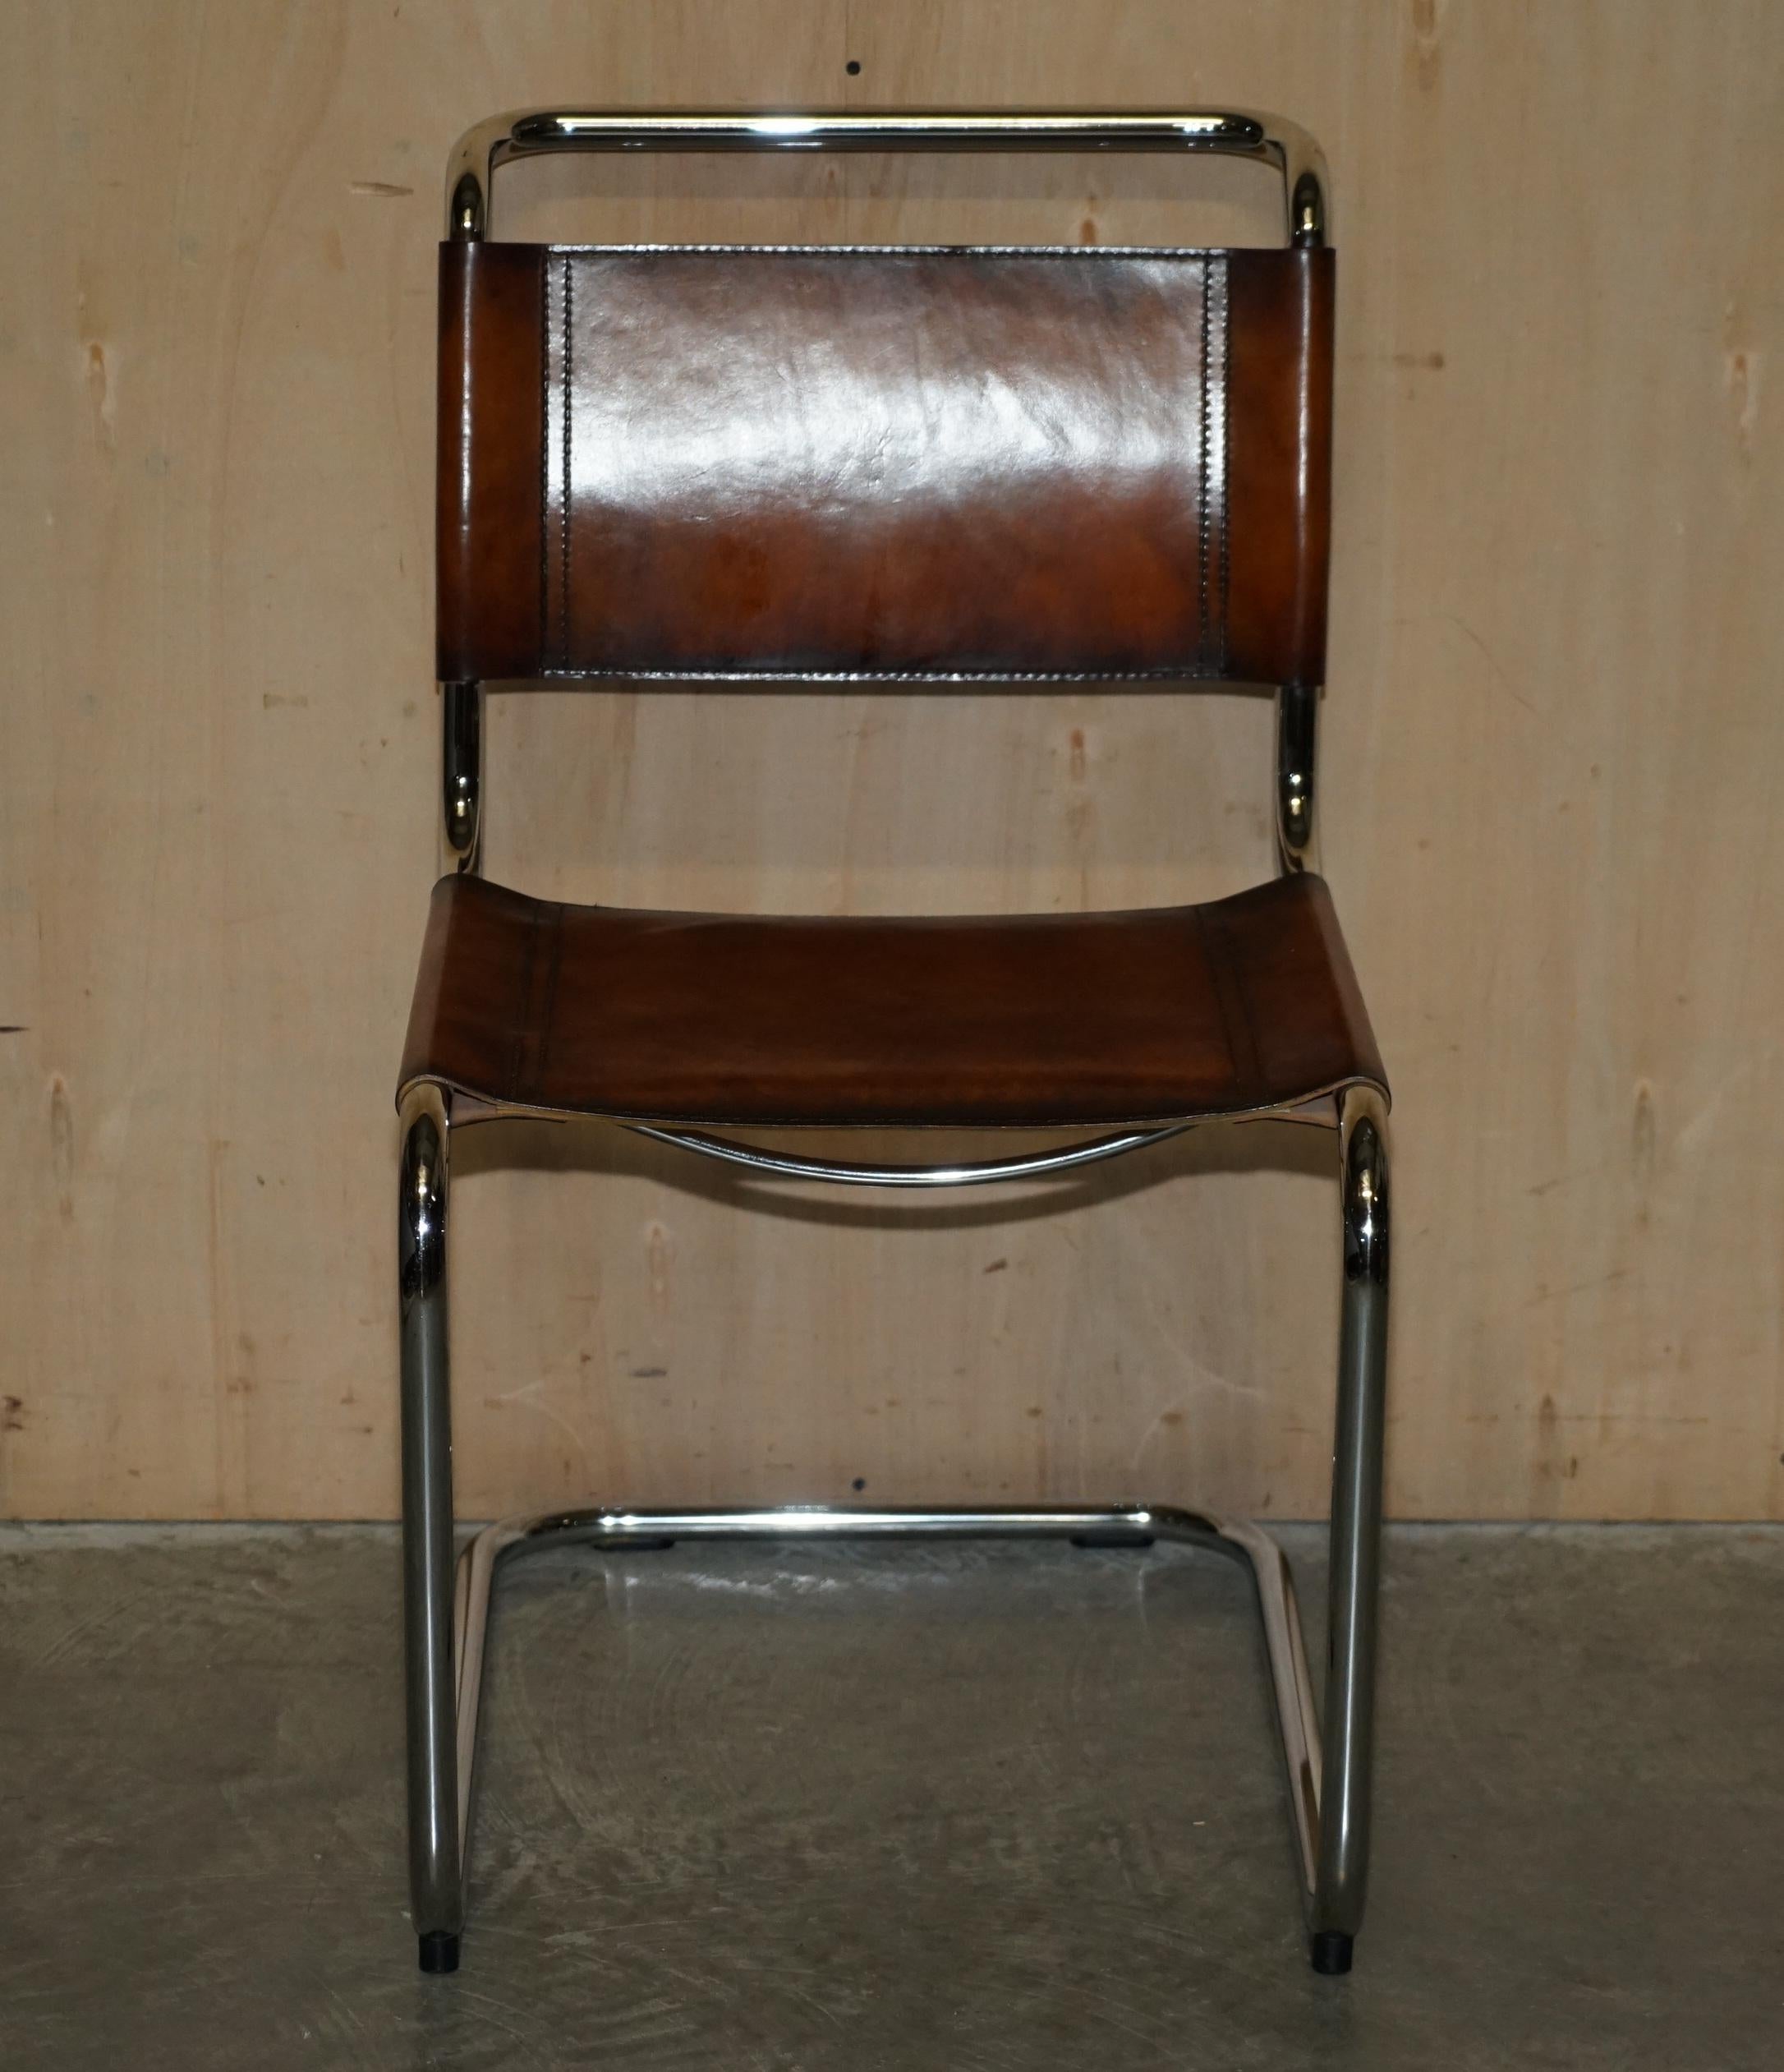 Nous sommes ravis de proposer à la vente cette suite unique de quatre fauteuils Marcel Breuer, Fasem, B34, entièrement restaurés, en cuir marron teint à la main, vendus par Fasem.
Veuillez noter que les frais de livraison indiqués sont donnés à